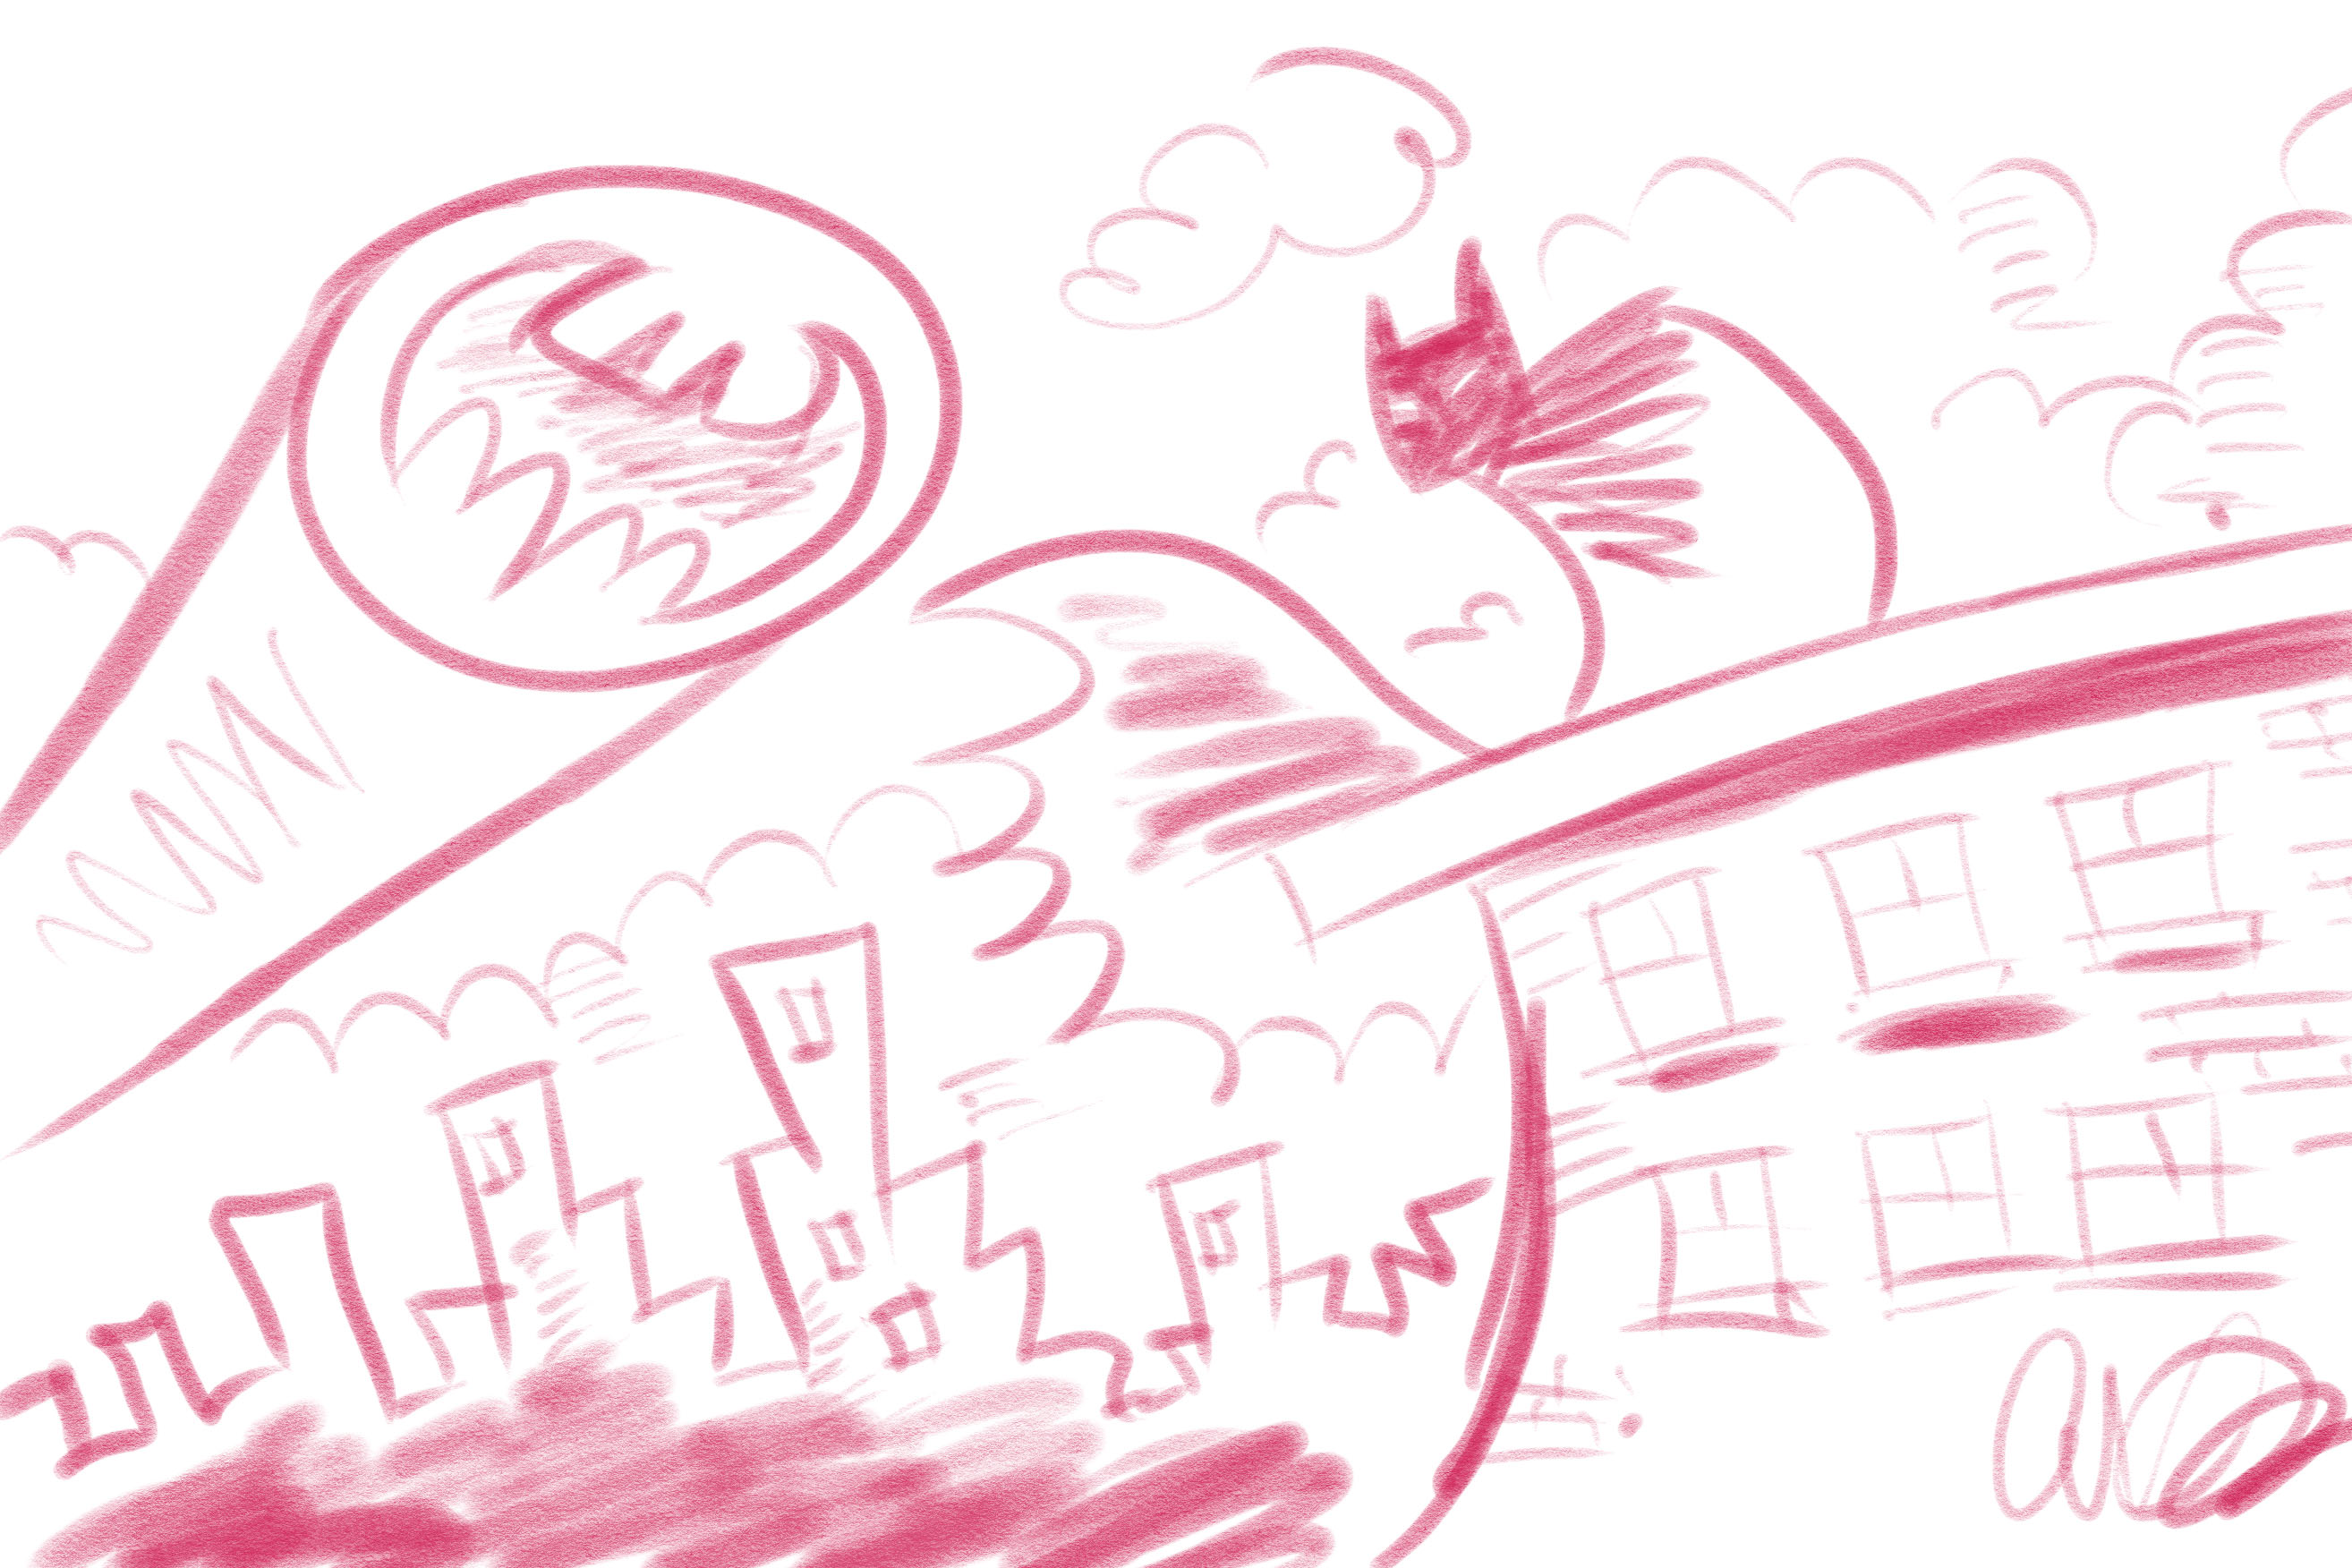 Sketch of Gotham and Batman